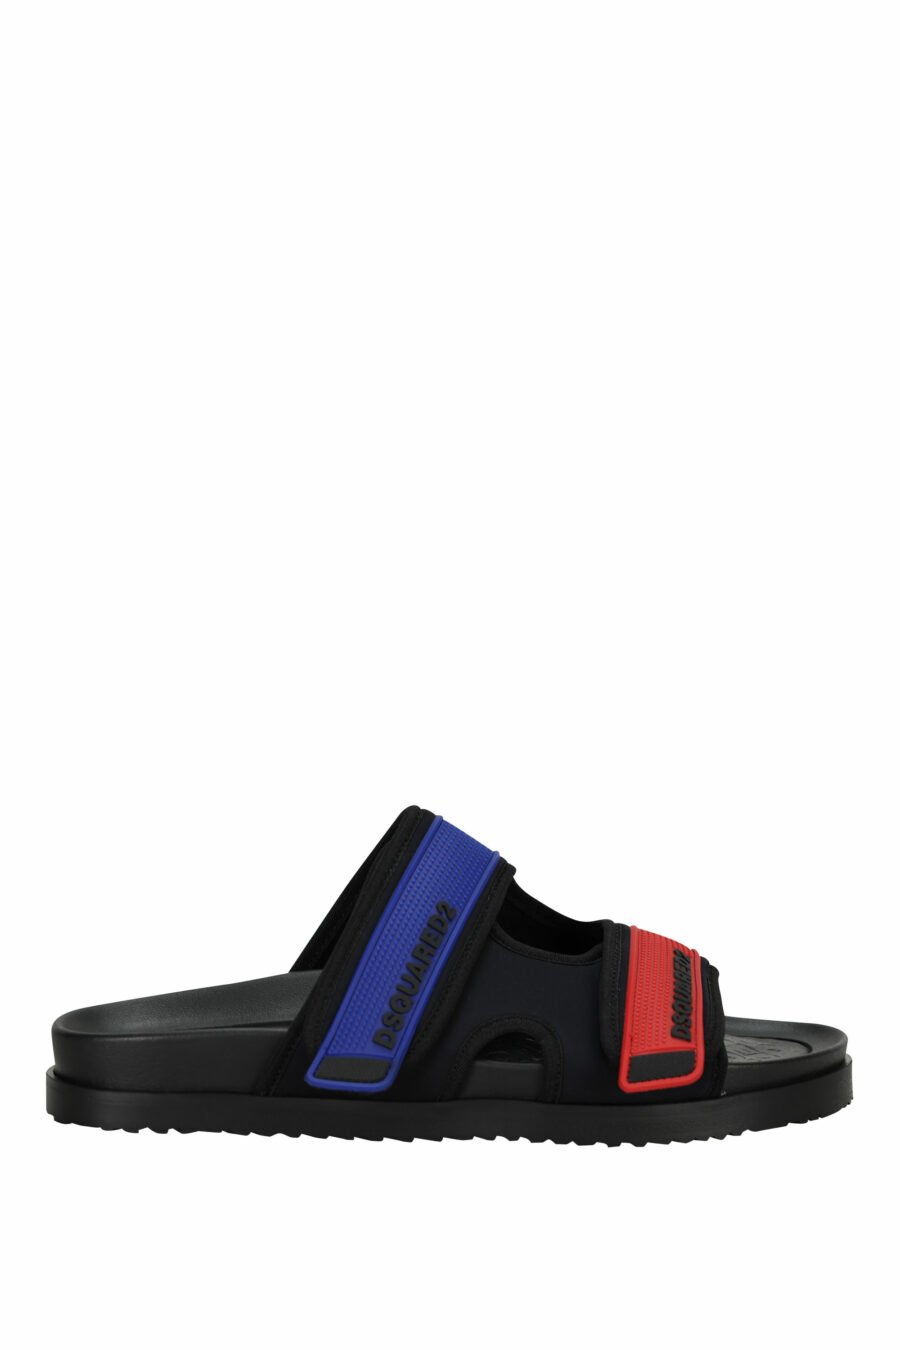 Schwarze Sandalen mit rotem und blauem Klettverschluss - 805777314715